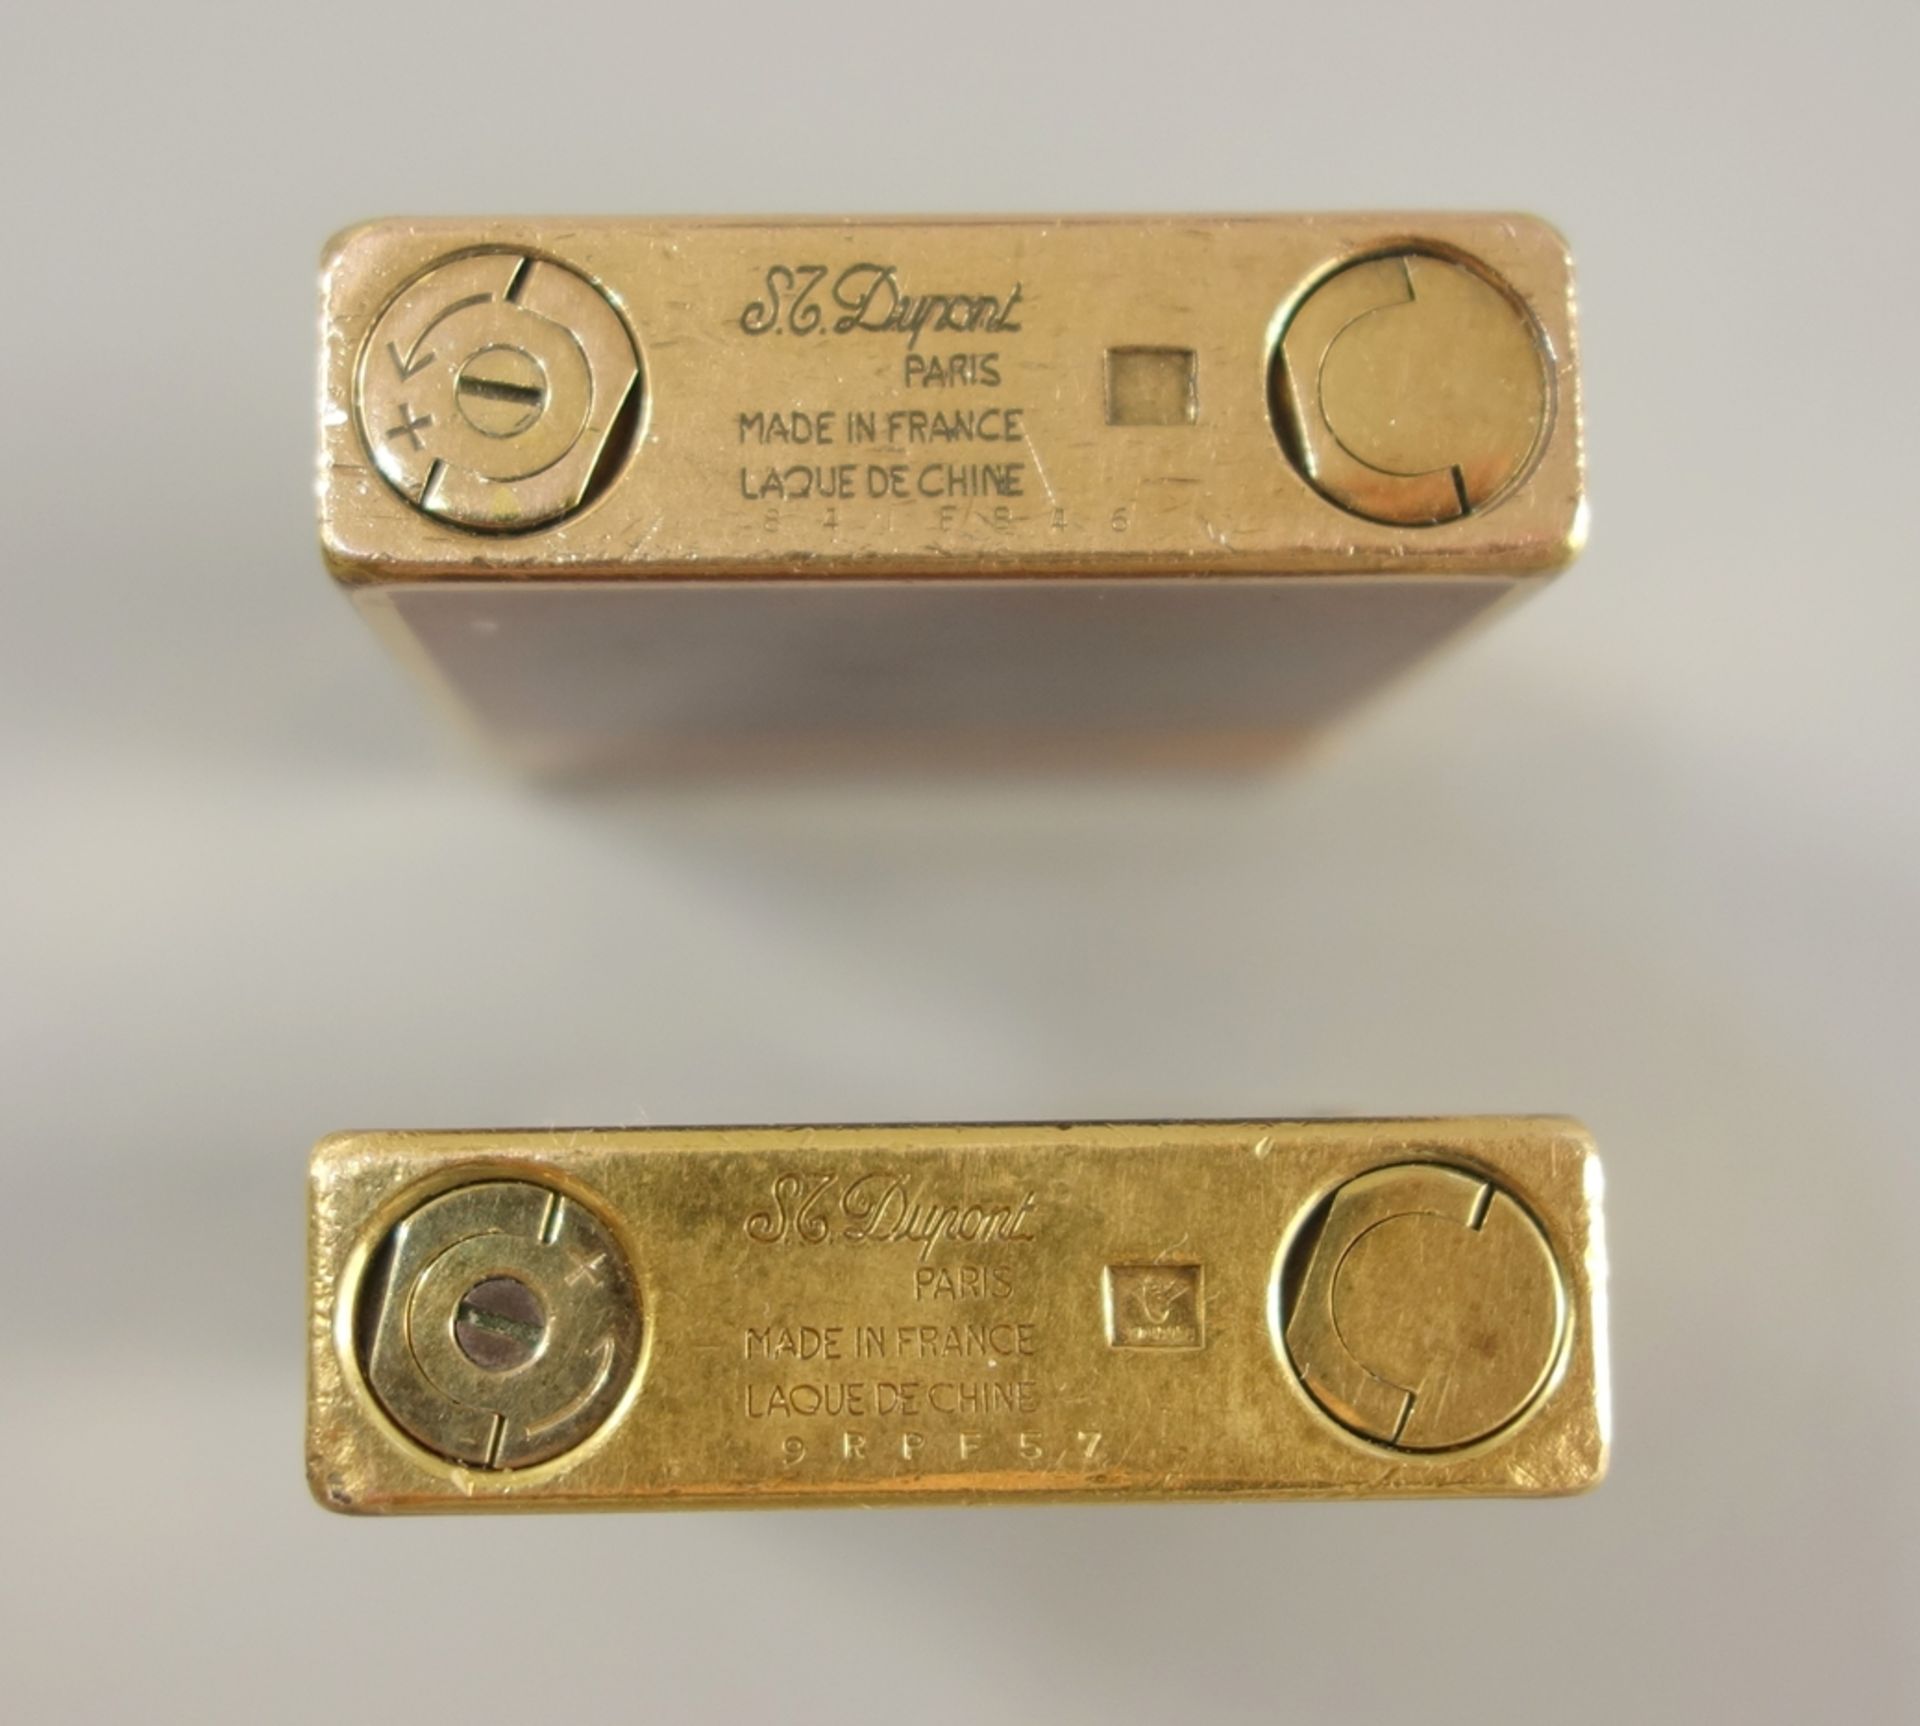 2 Feuerzeuge mit Monogramm, S.T. Dupont, Paris, vergoldet, mit Chinalack, monogrammiert "GB", - Bild 6 aus 6